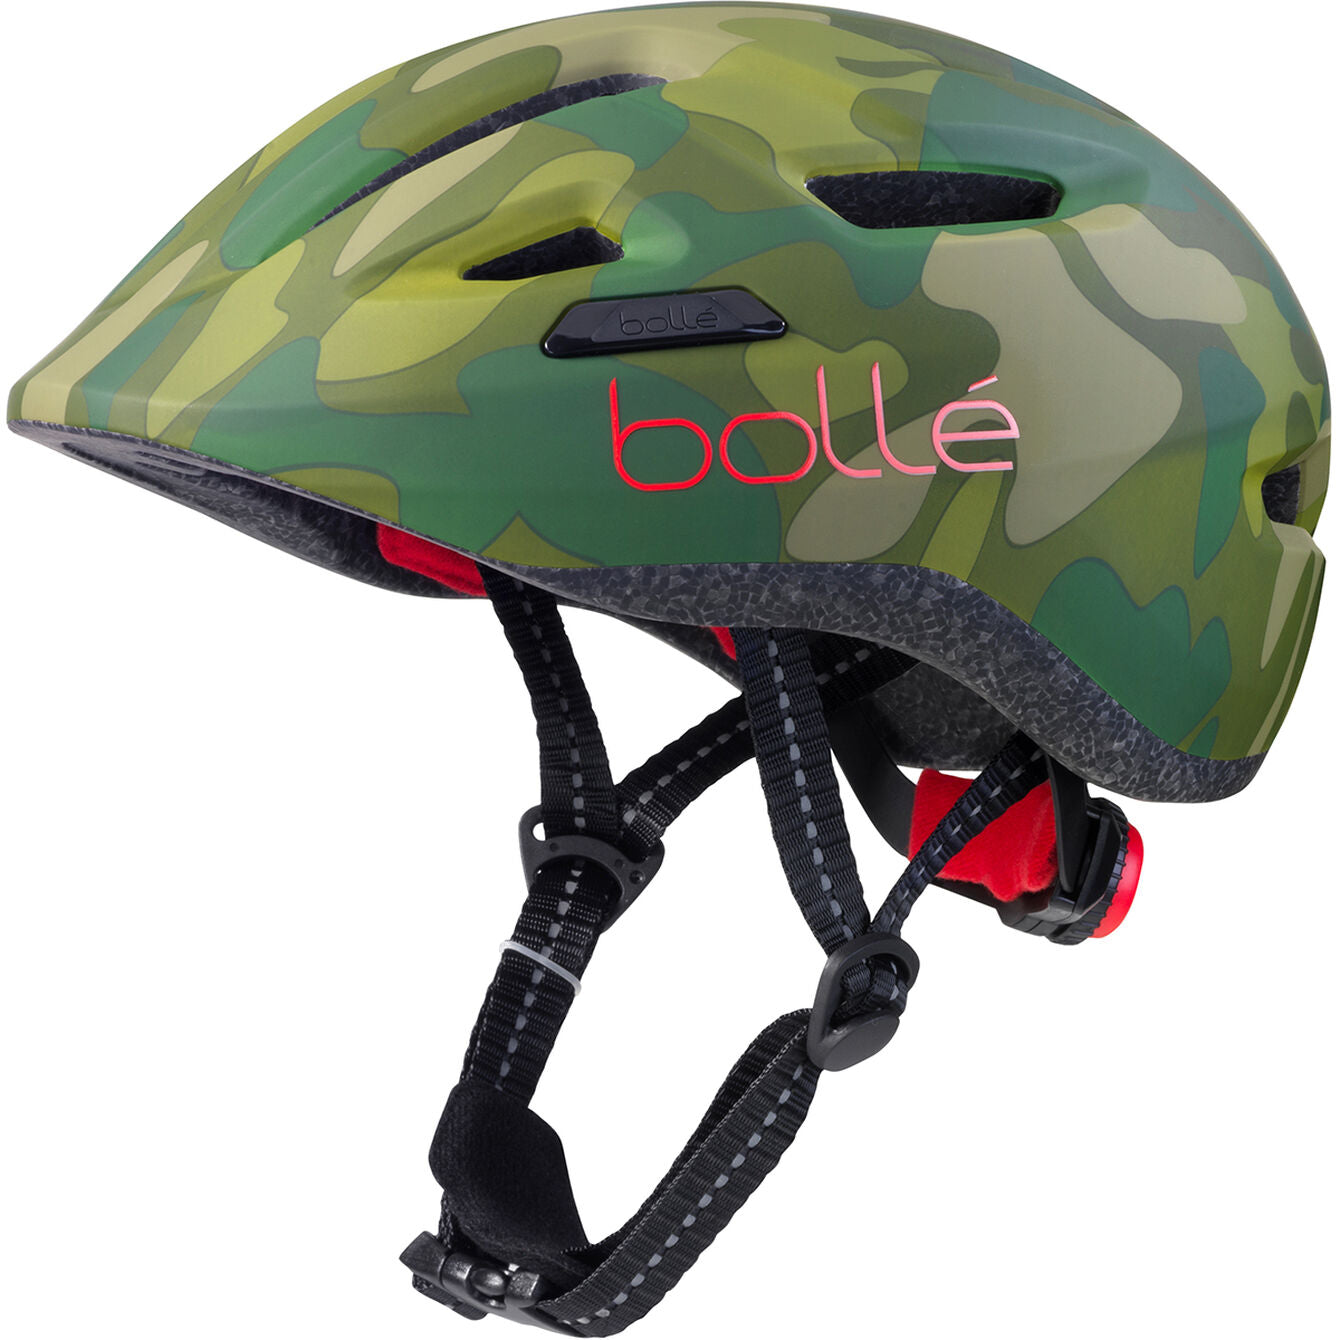 Bollé Casque De Vélo Stance Junior 47-51 Cm Vert/Rouge Mt Xs